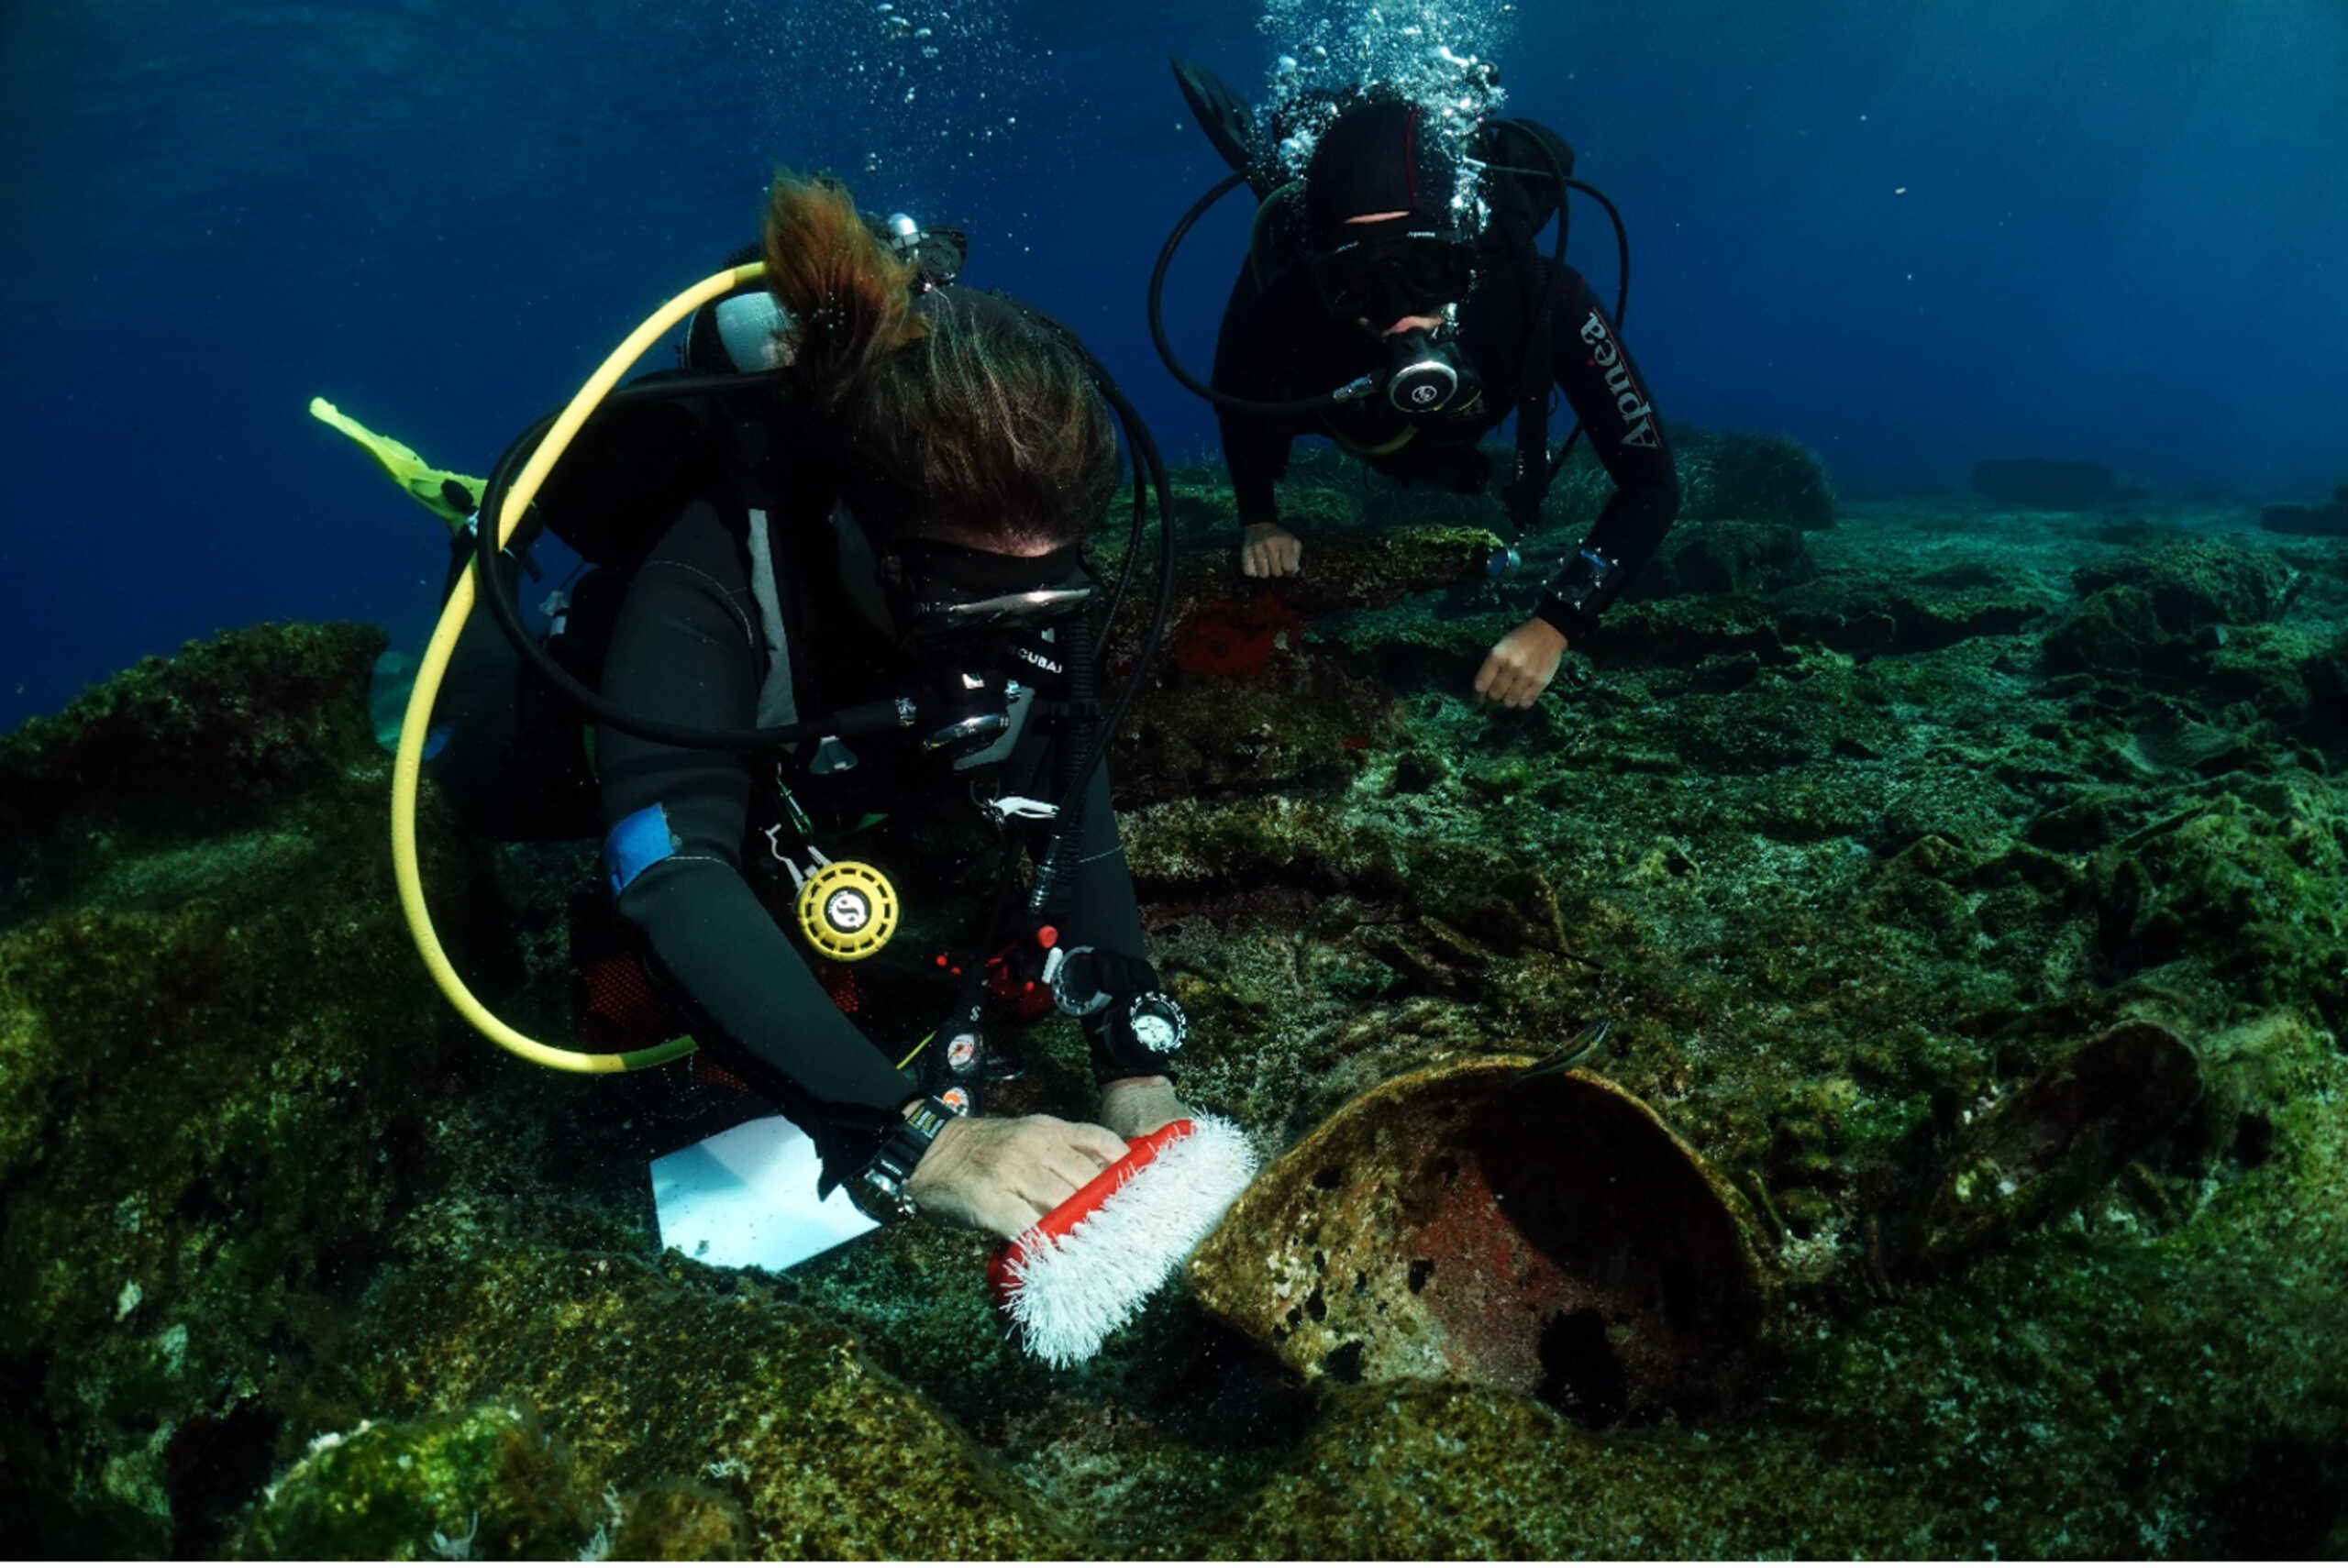 ΥΠΠΟ: Ανακάλυψη ναυαγίων και προϊστορικών ευρημάτων κατά την υποβρύχια αρχαιολογική έρευνα στην Κάσο